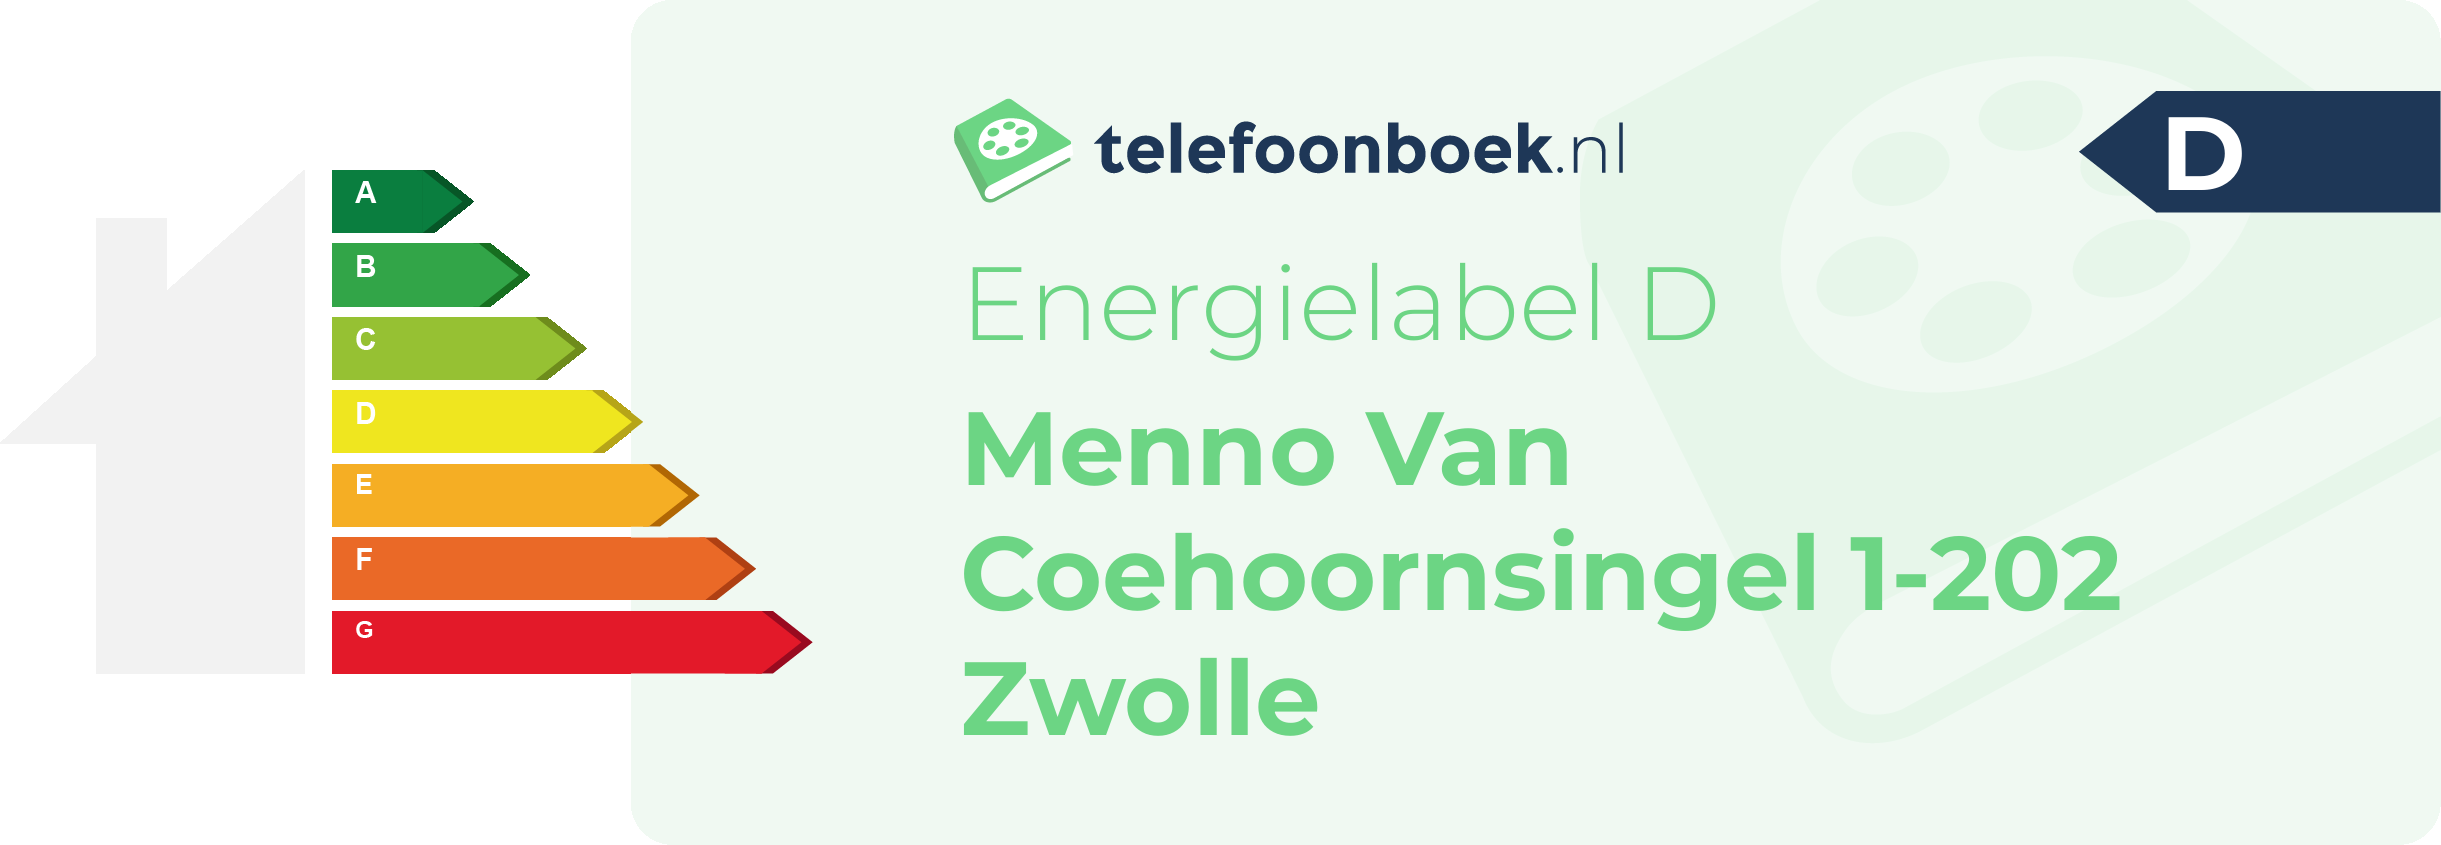 Energielabel Menno Van Coehoornsingel 1-202 Zwolle